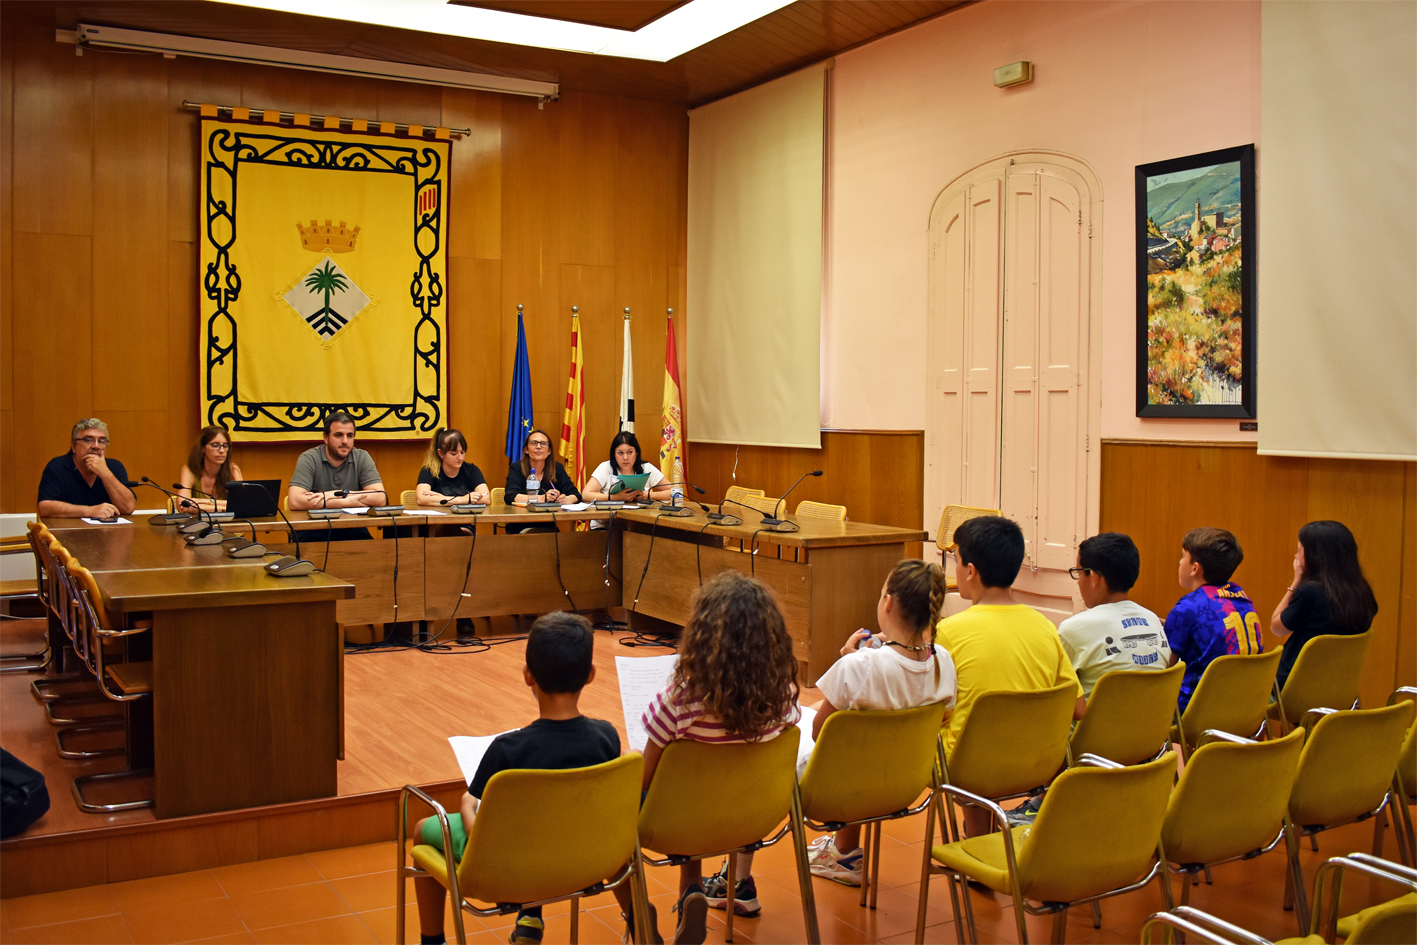 Imatge de la reunió del Consell Municipal dels Infants amb l'alcalde Albert Coberó i altres membres de l'equip de govern municipal, al saló de sessions de la Casa de la Vila.